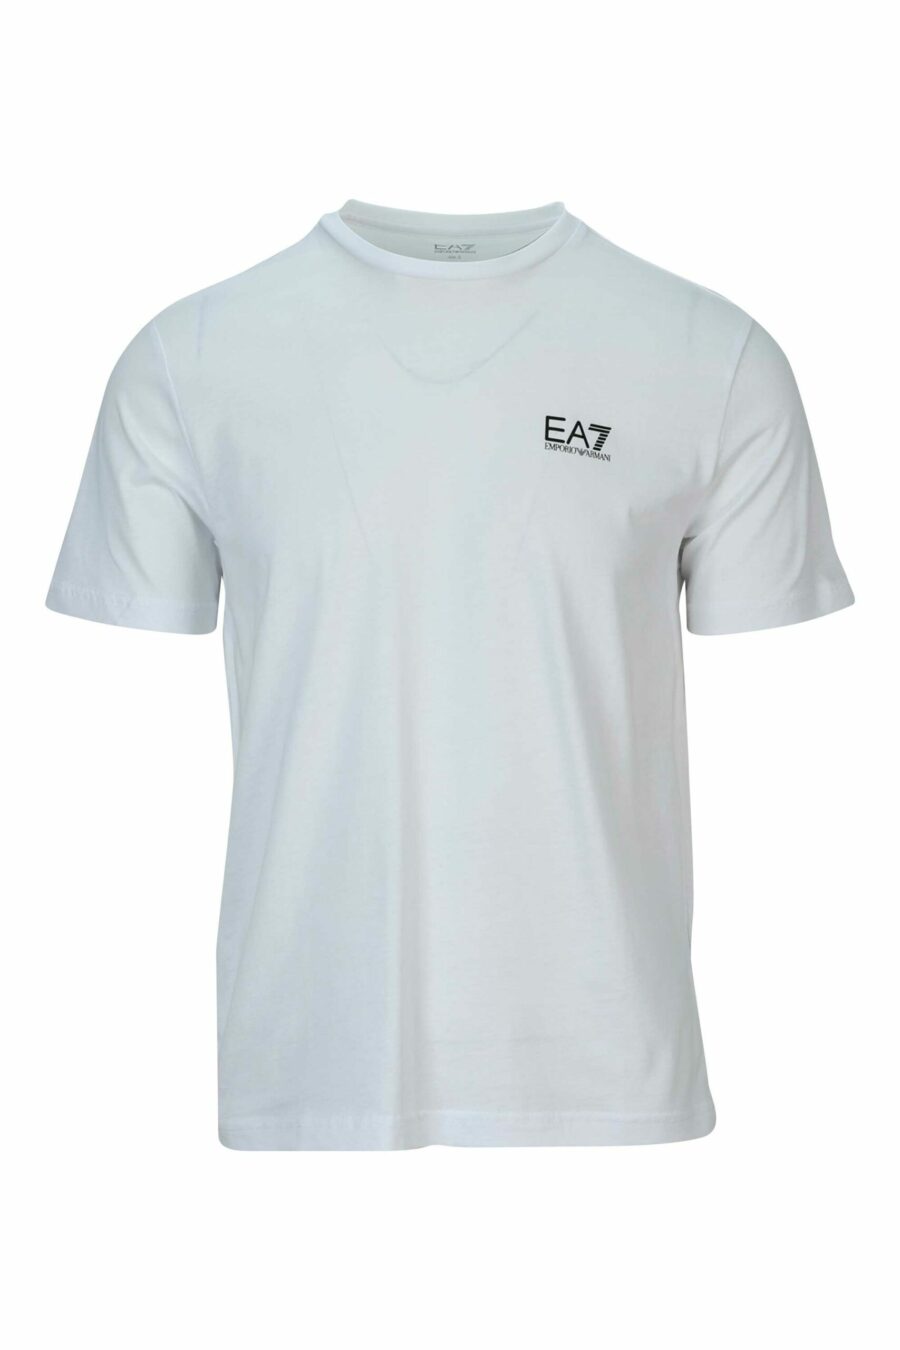 Weißes T-Shirt mit vertikalem "lux identity" Maxilogo auf dem Rücken - 8058947452569 skaliert